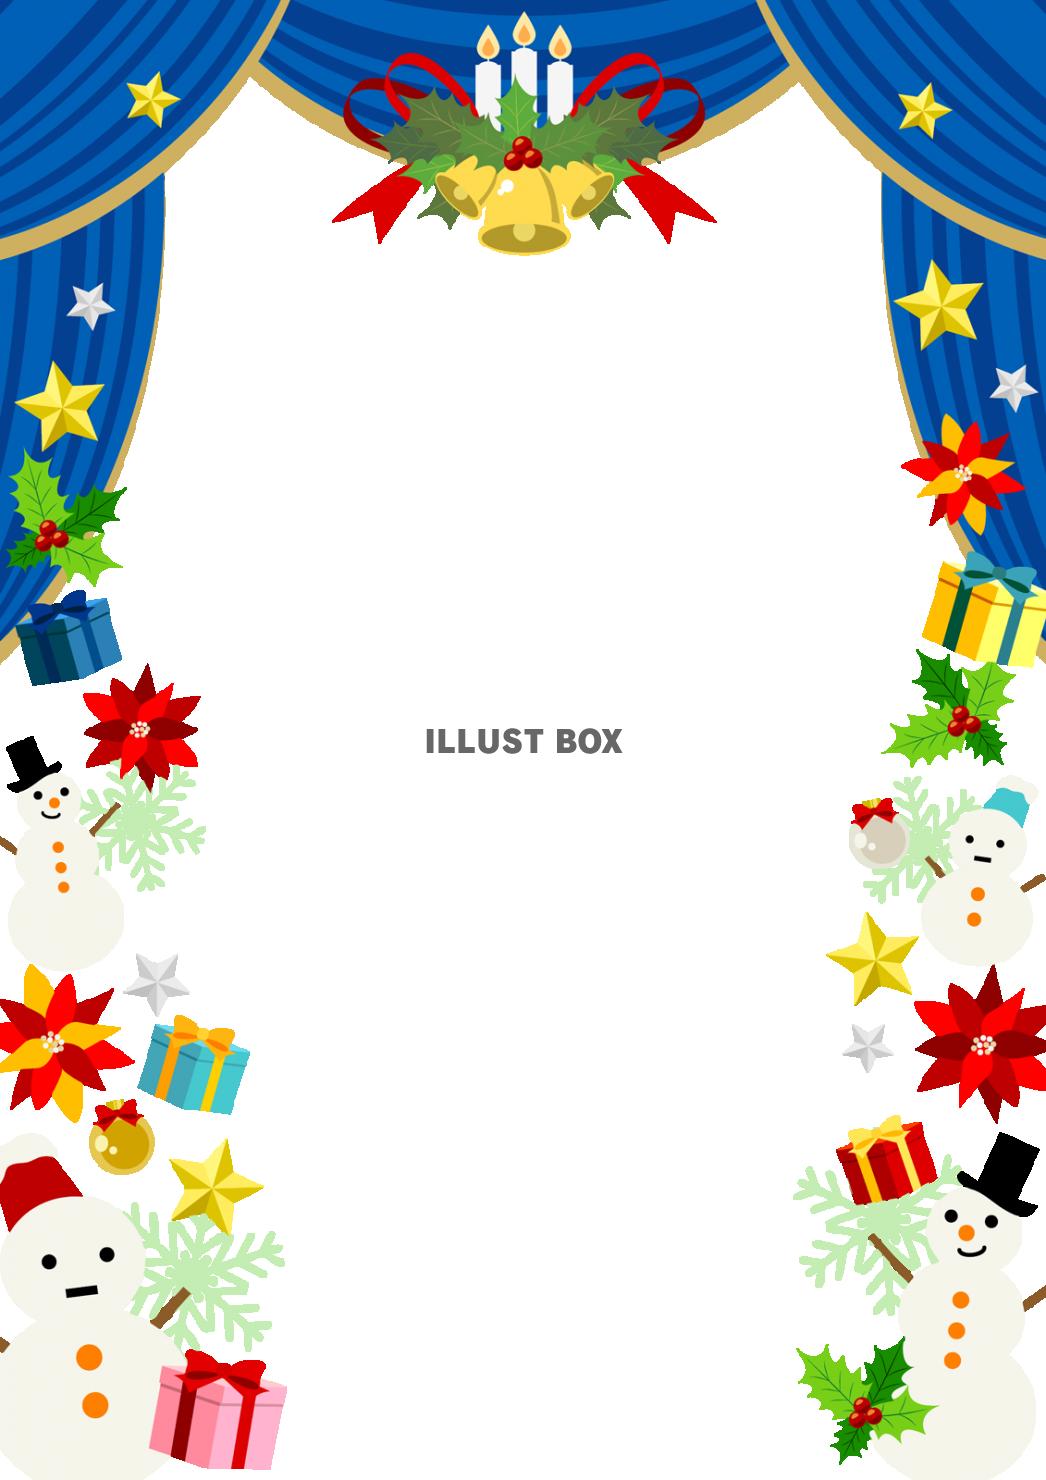 クリスマス素材を青い緞帳型フレームにちりばめた劇場風フレーム...